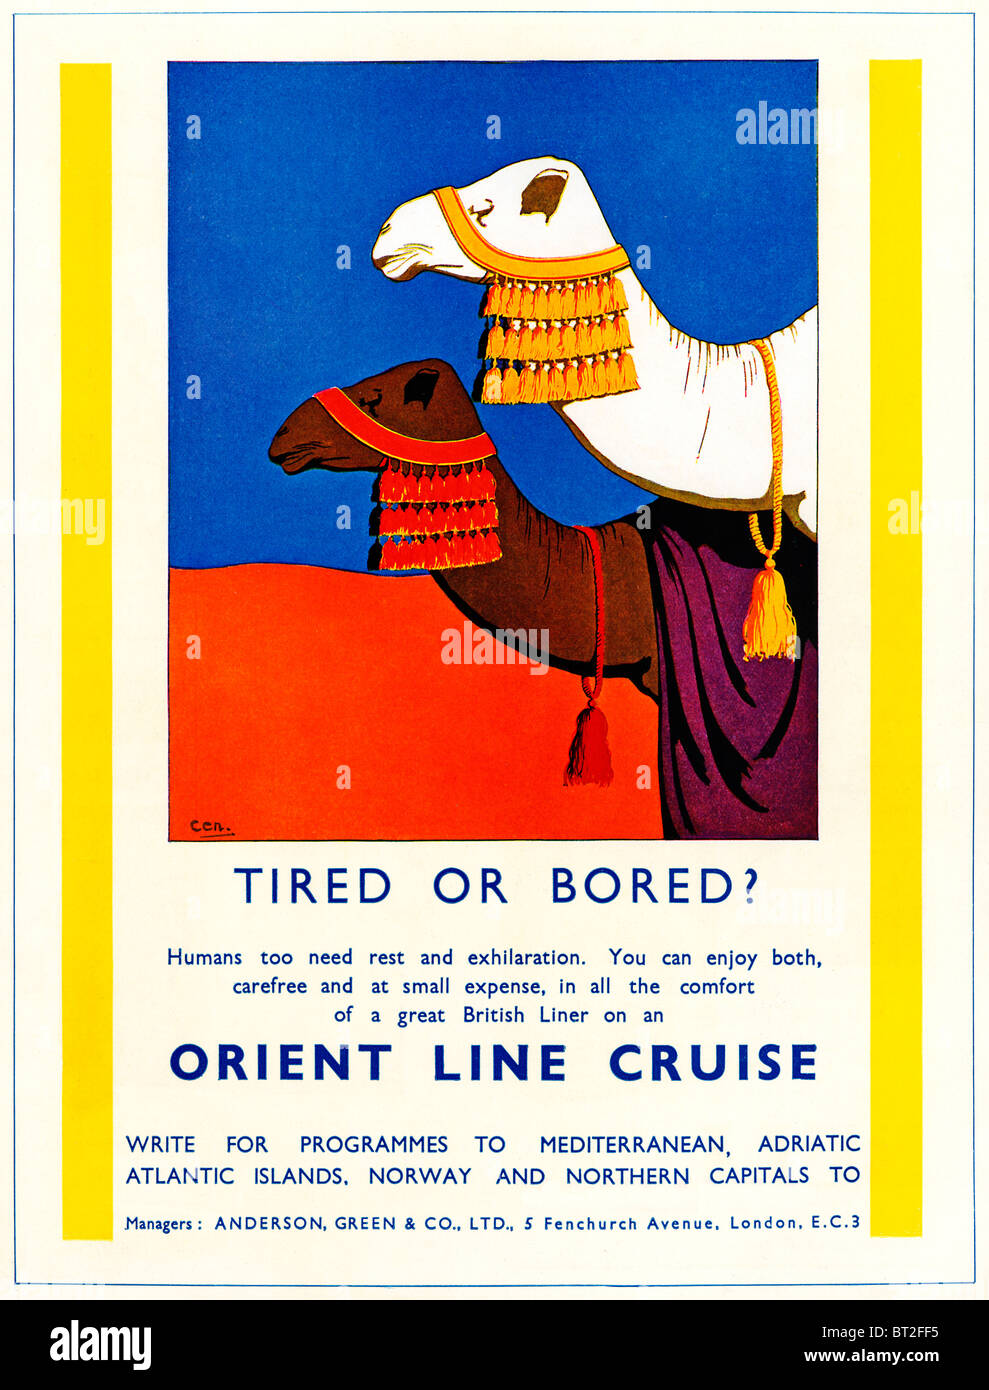 Orientare il tubo crociere, 1931 spot per la linea di crociera parte di proprietà di P&O, qui illustrante il nord africana di servizio Foto Stock